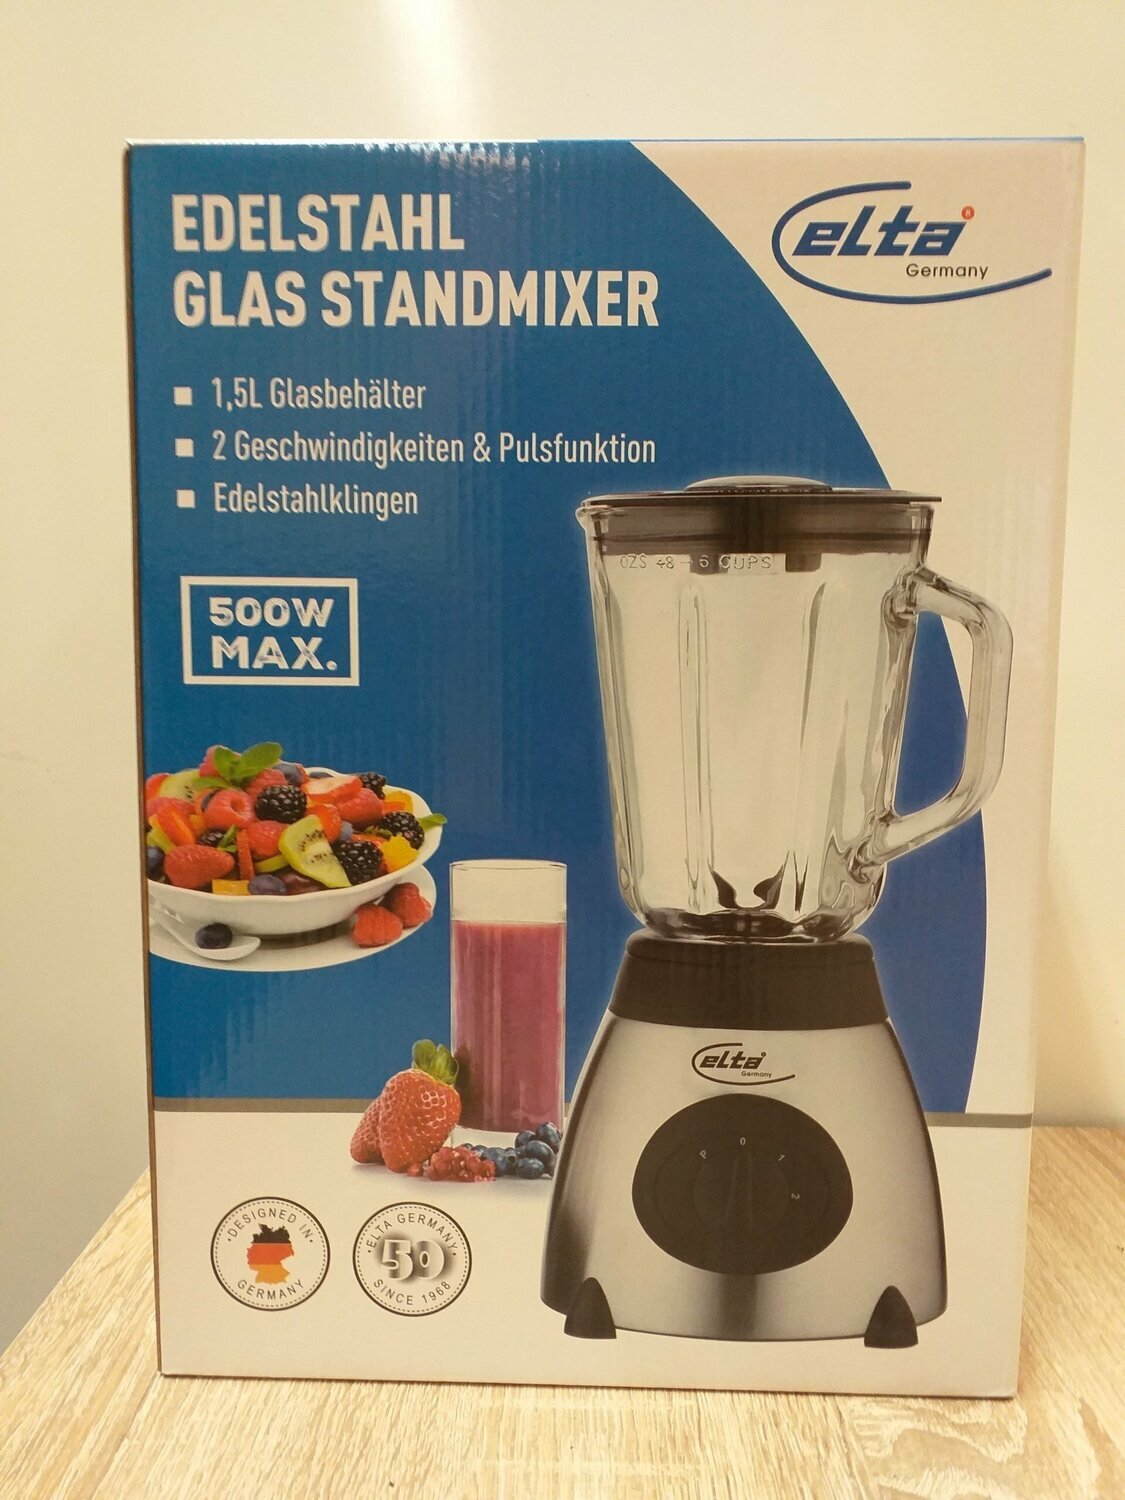 ELTA - Edelstahl- Glas- Standmixer - 500W - Edelstahlklingen